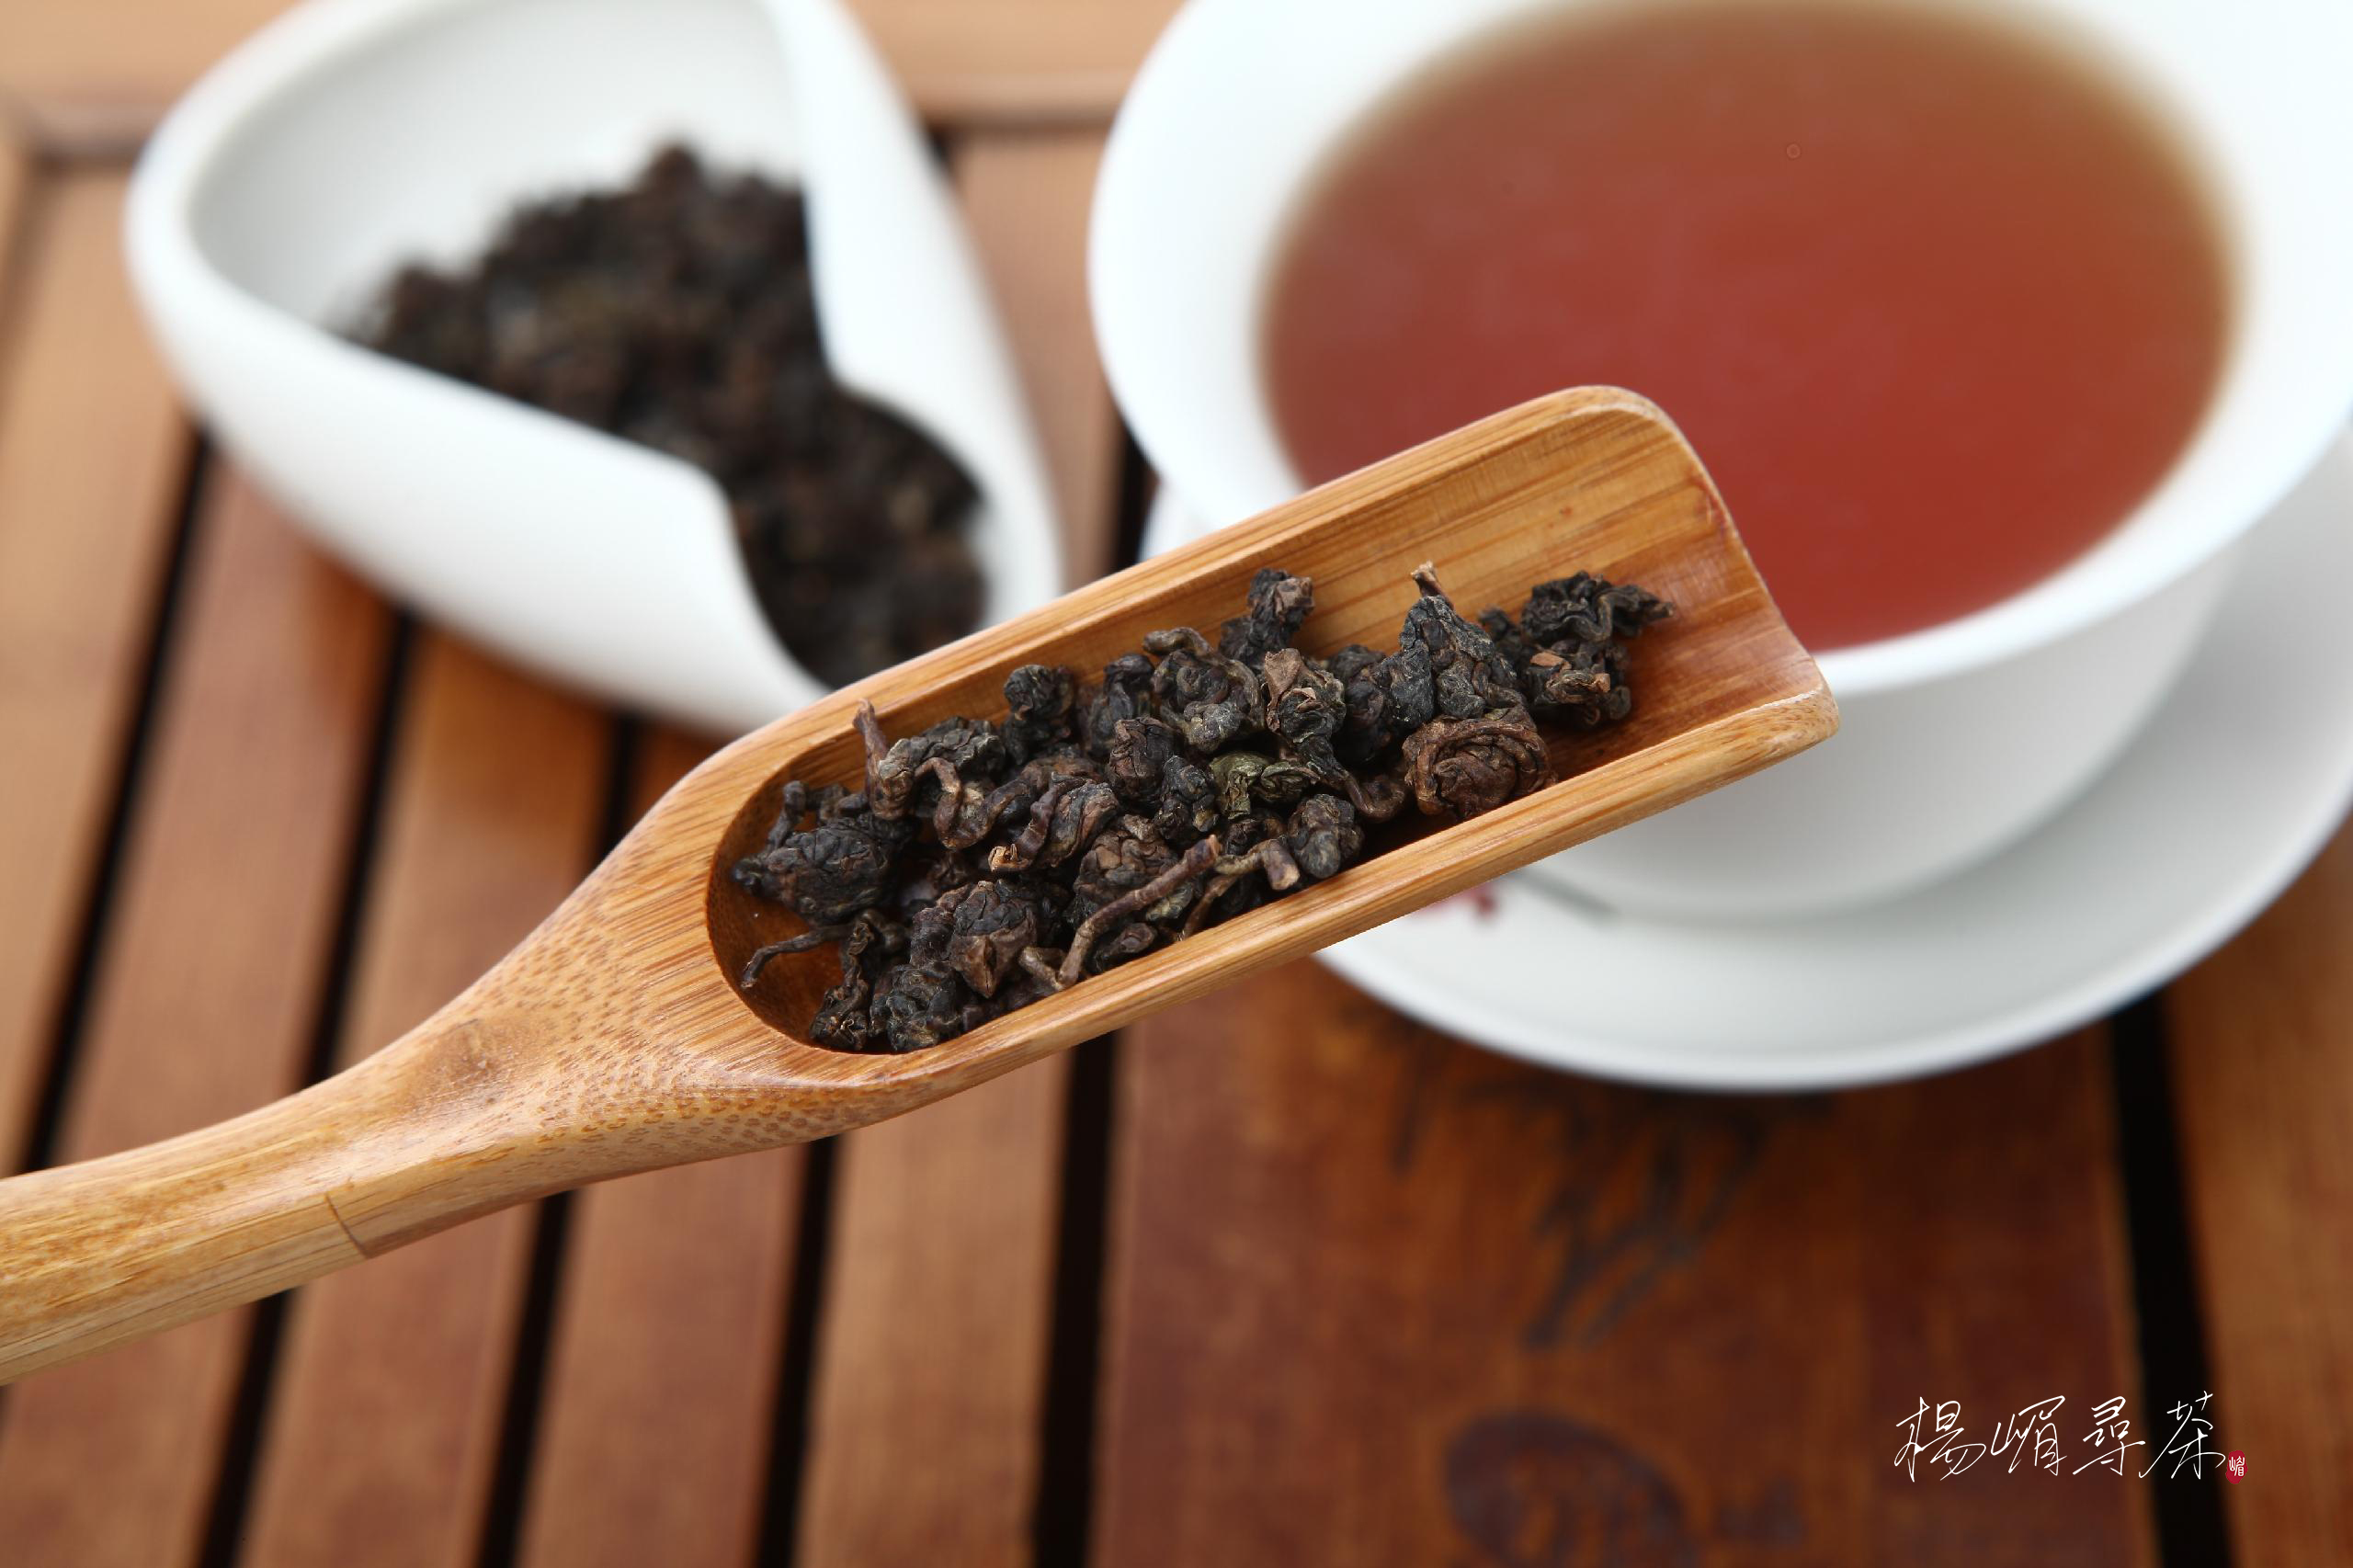 04台湾乌龙茶:台湾乌龙茶源于闽南乌龙,经后续发展又有别于闽南乌龙.